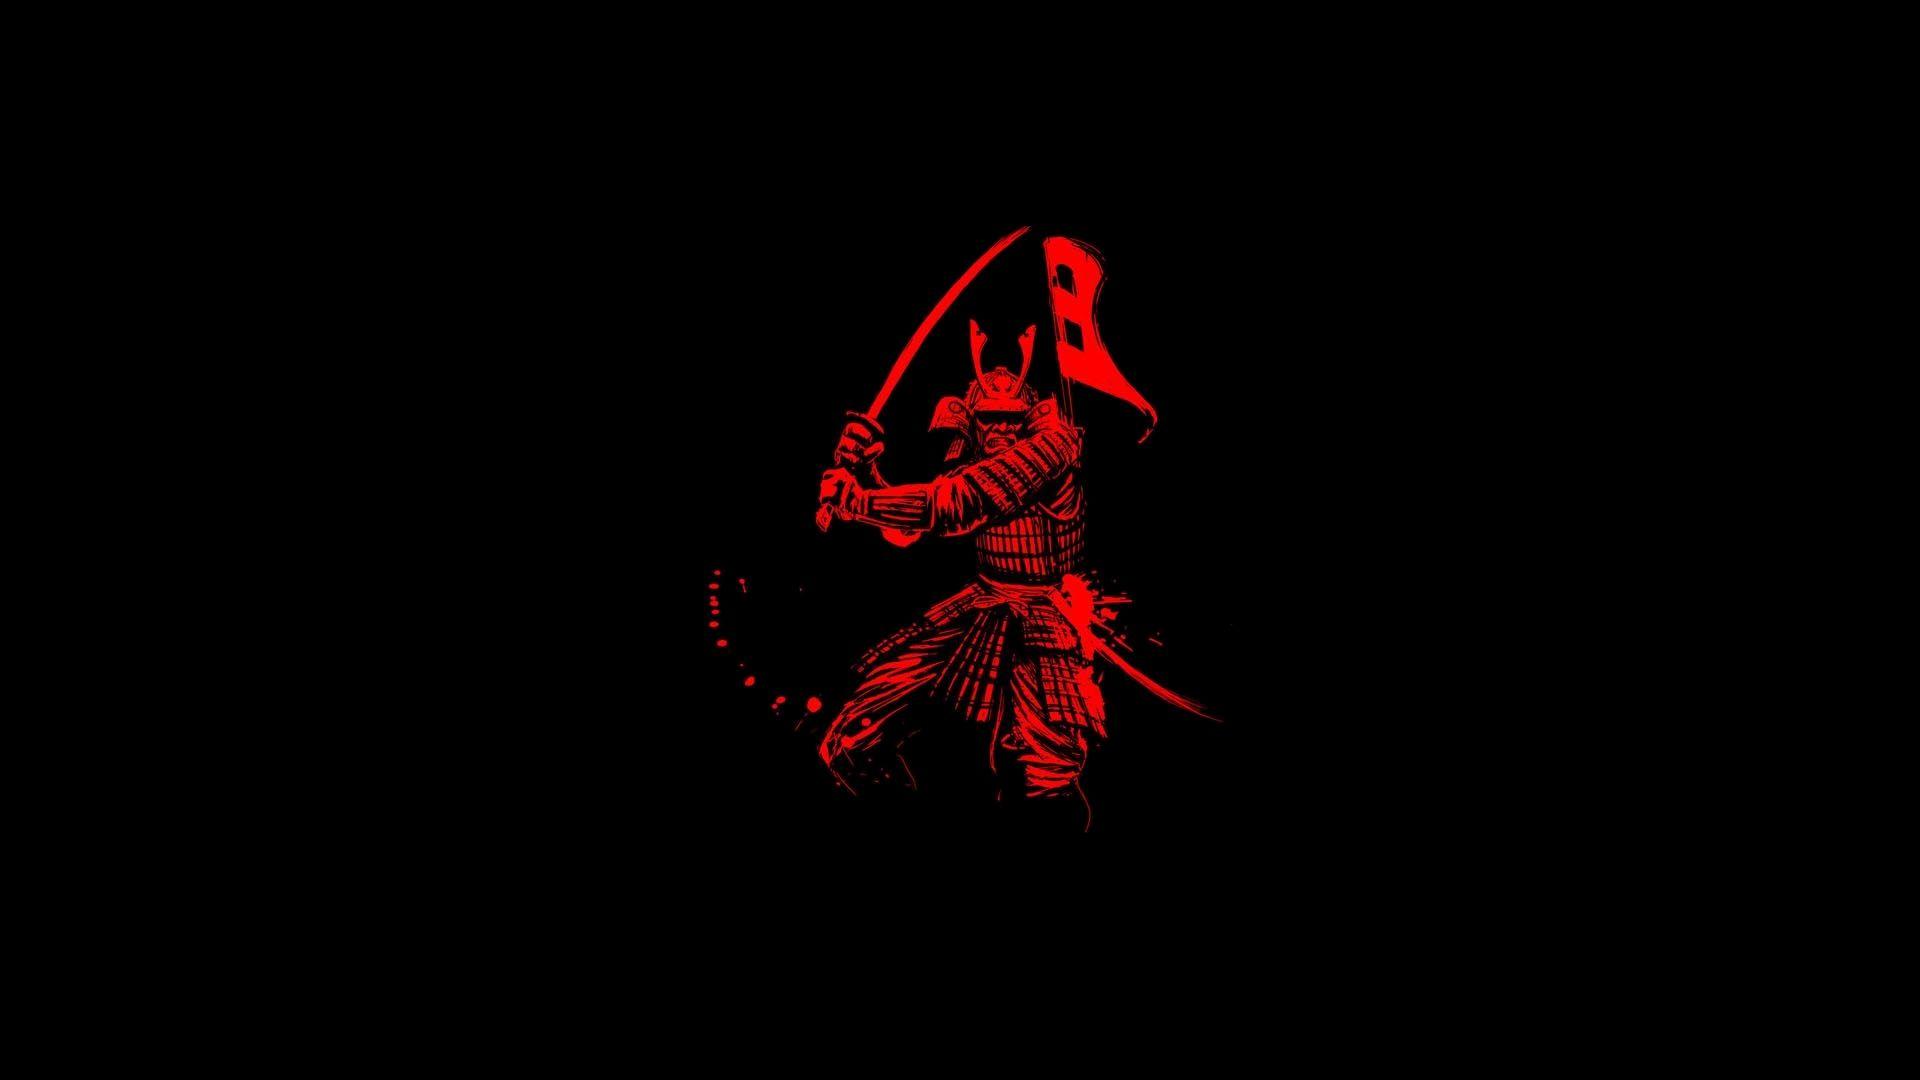 Hãy cùng lướt qua bộ sưu tập hình nền samurai đẹp để tìm một bức ảnh tuyệt đẹp cho màn hình máy tính của bạn. Thấy được bộ giáp và vũ khí của samurai chi tiết đến từng chút, bạn sẽ cảm thấy như mình đang chiến đấu bên Samurai Shodown.